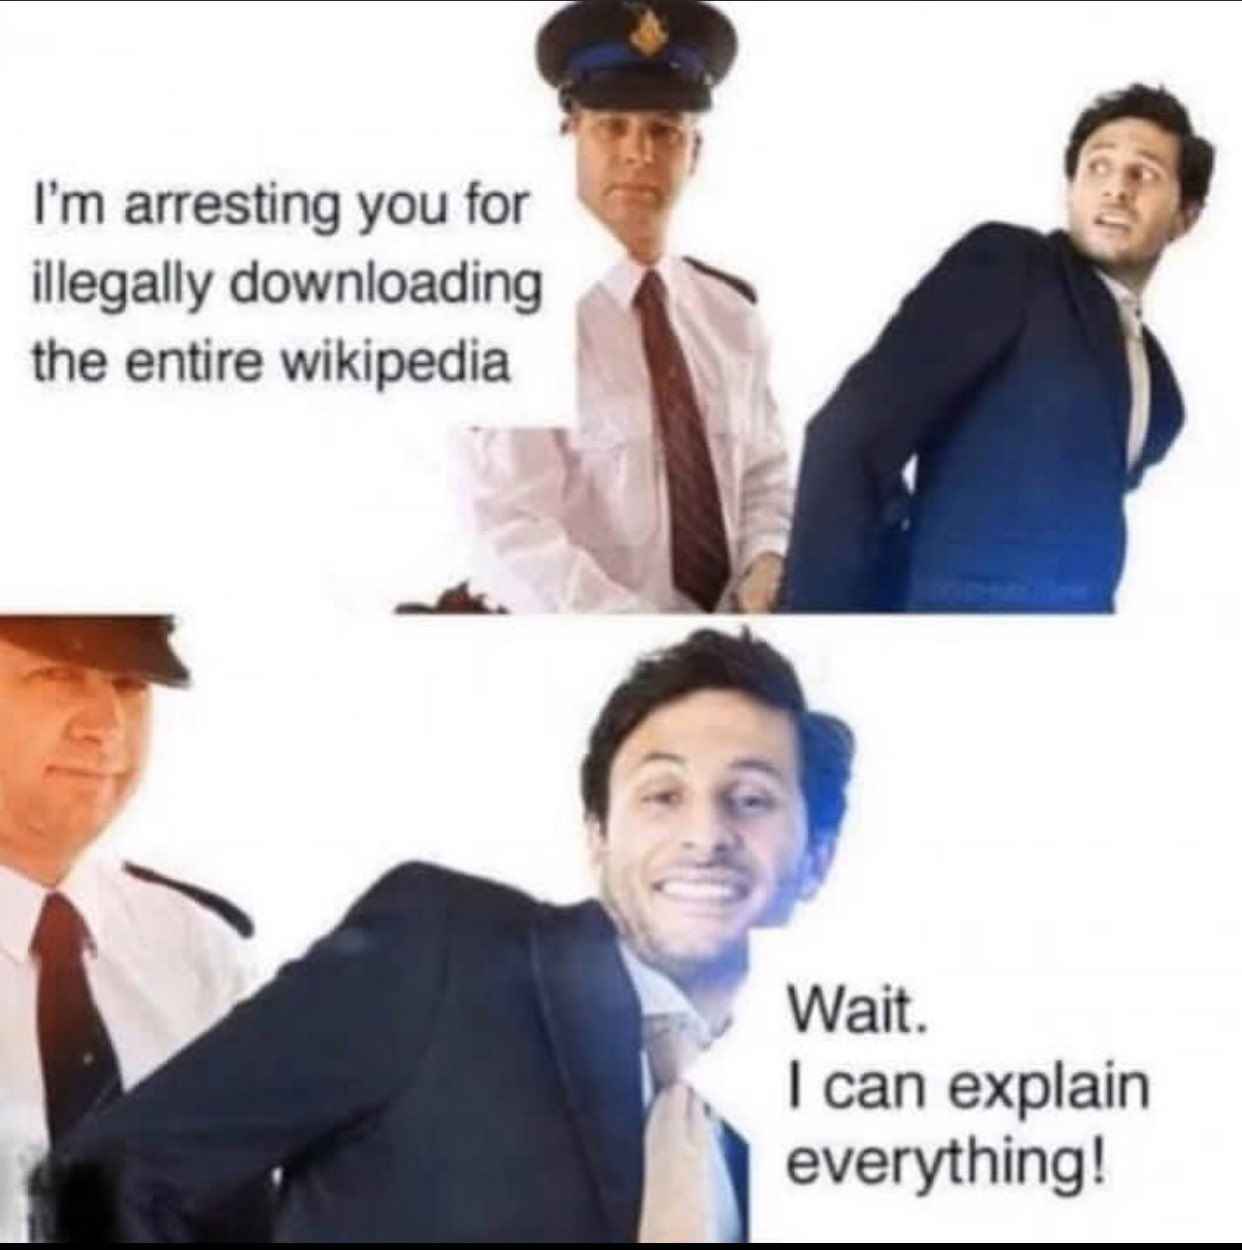 Wait officer.